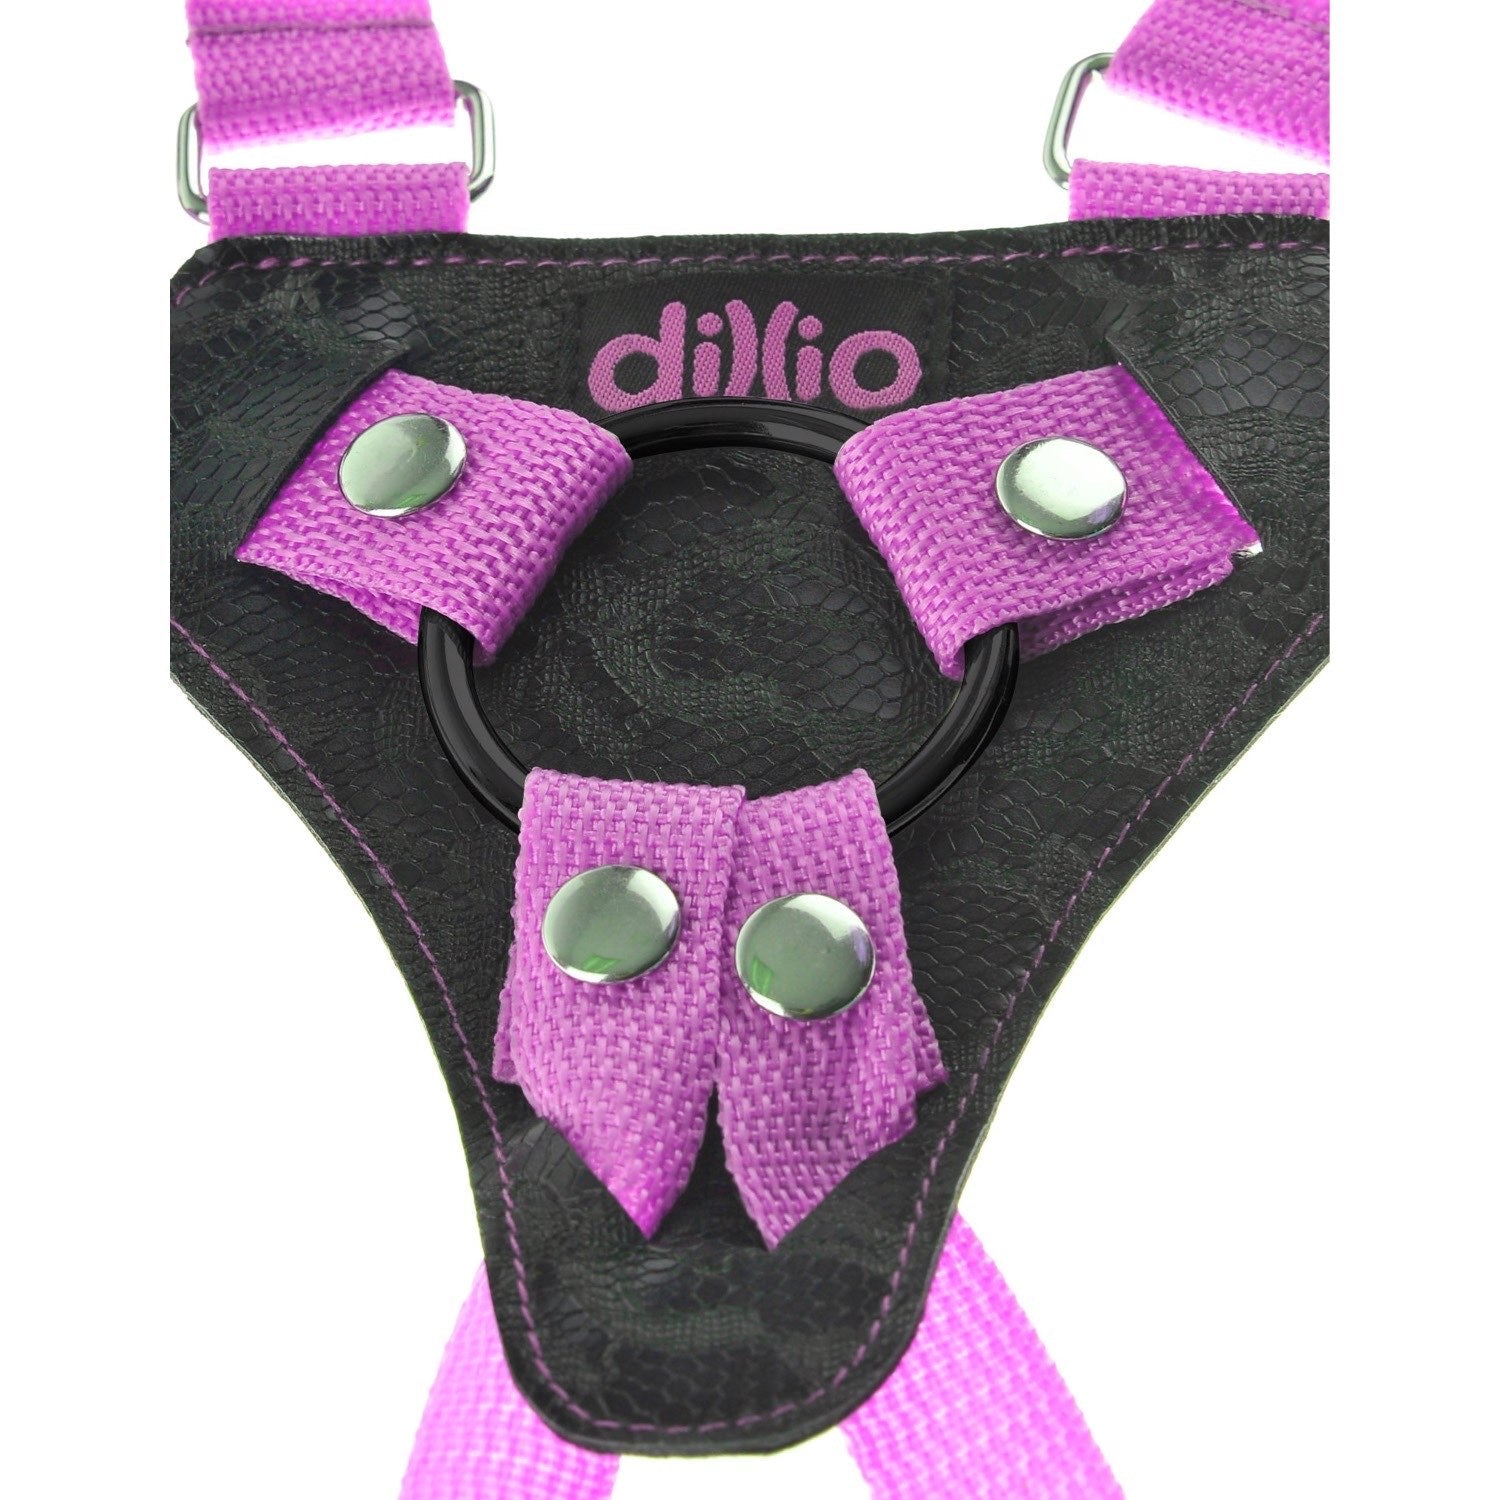 迪利奥 7 英寸绑带式吊带套装 - 粉色 17.8 厘米绑式带吊带 by Pipedream